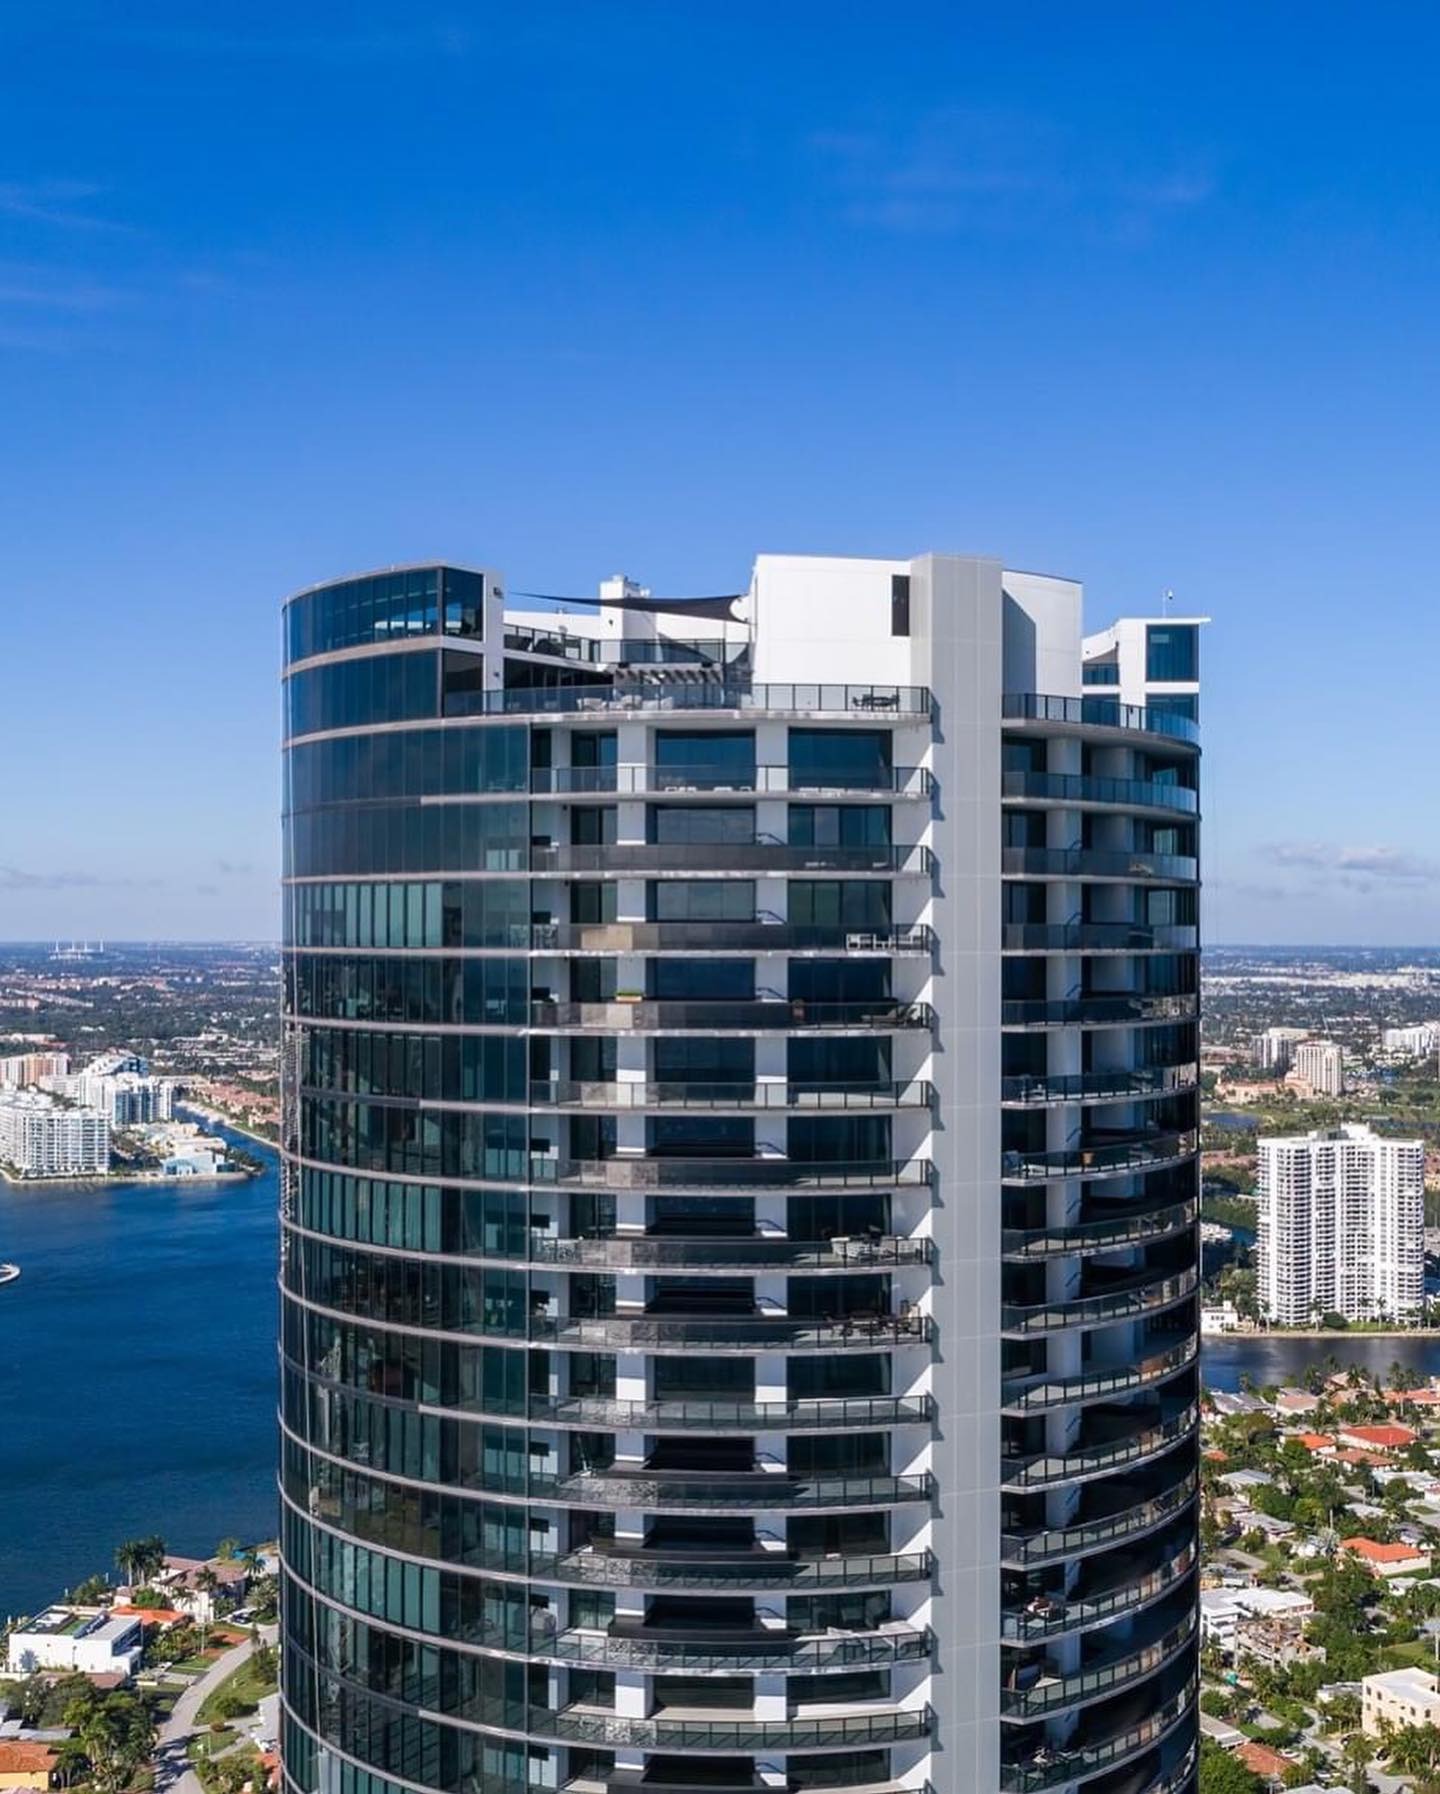 Vista de la exclusiva torre Porsche de Miami donde vive Lionel Messi y otros famosos